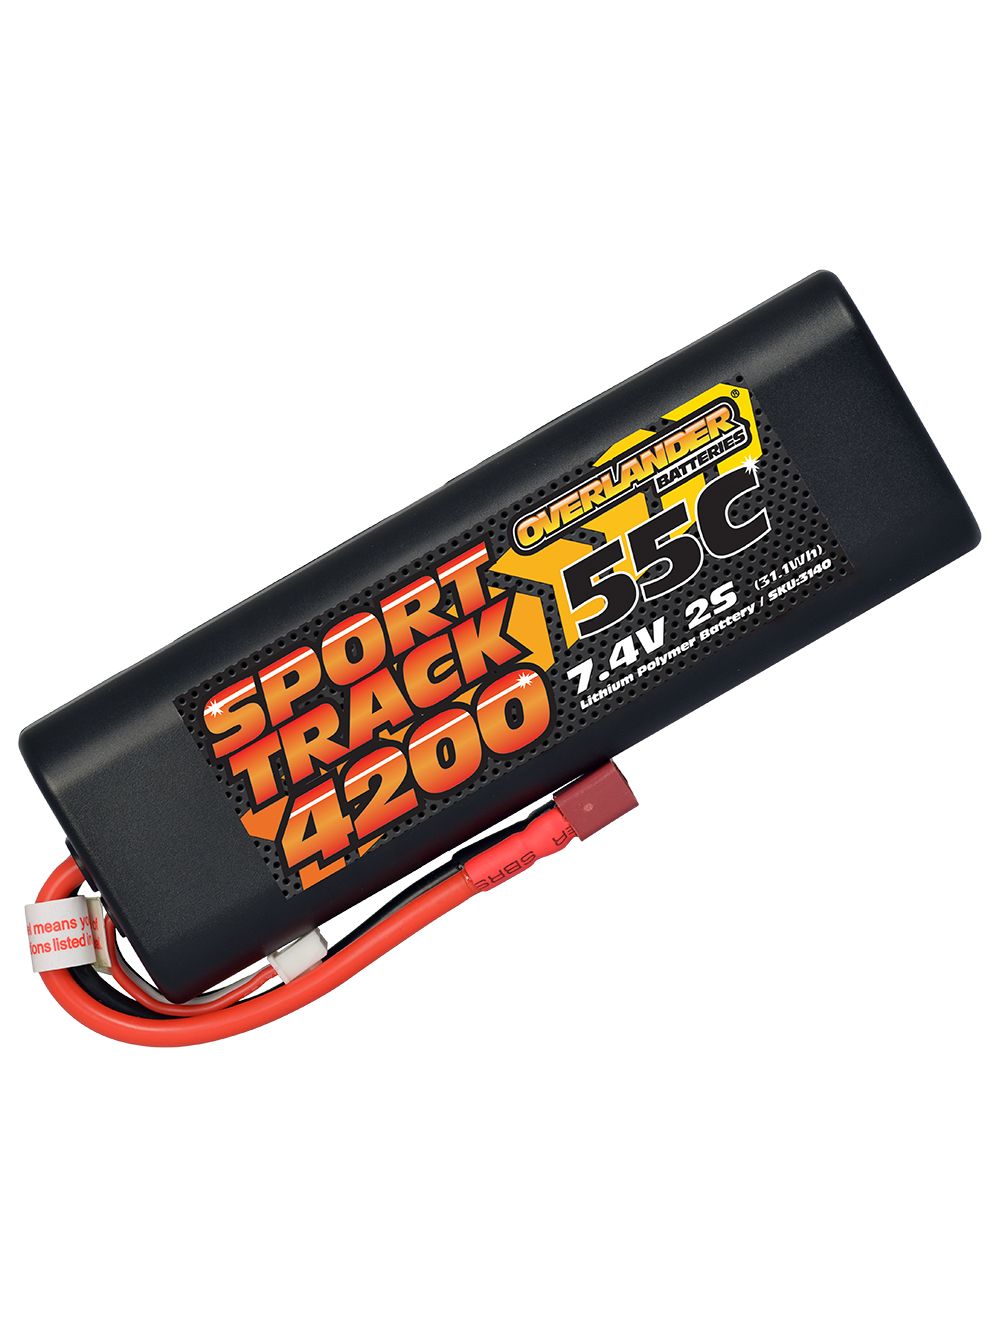 Overlander 4200mAh 7.4V 2S 55C Hard Case Sport Track LiPo Battery - Deans Connector 3140